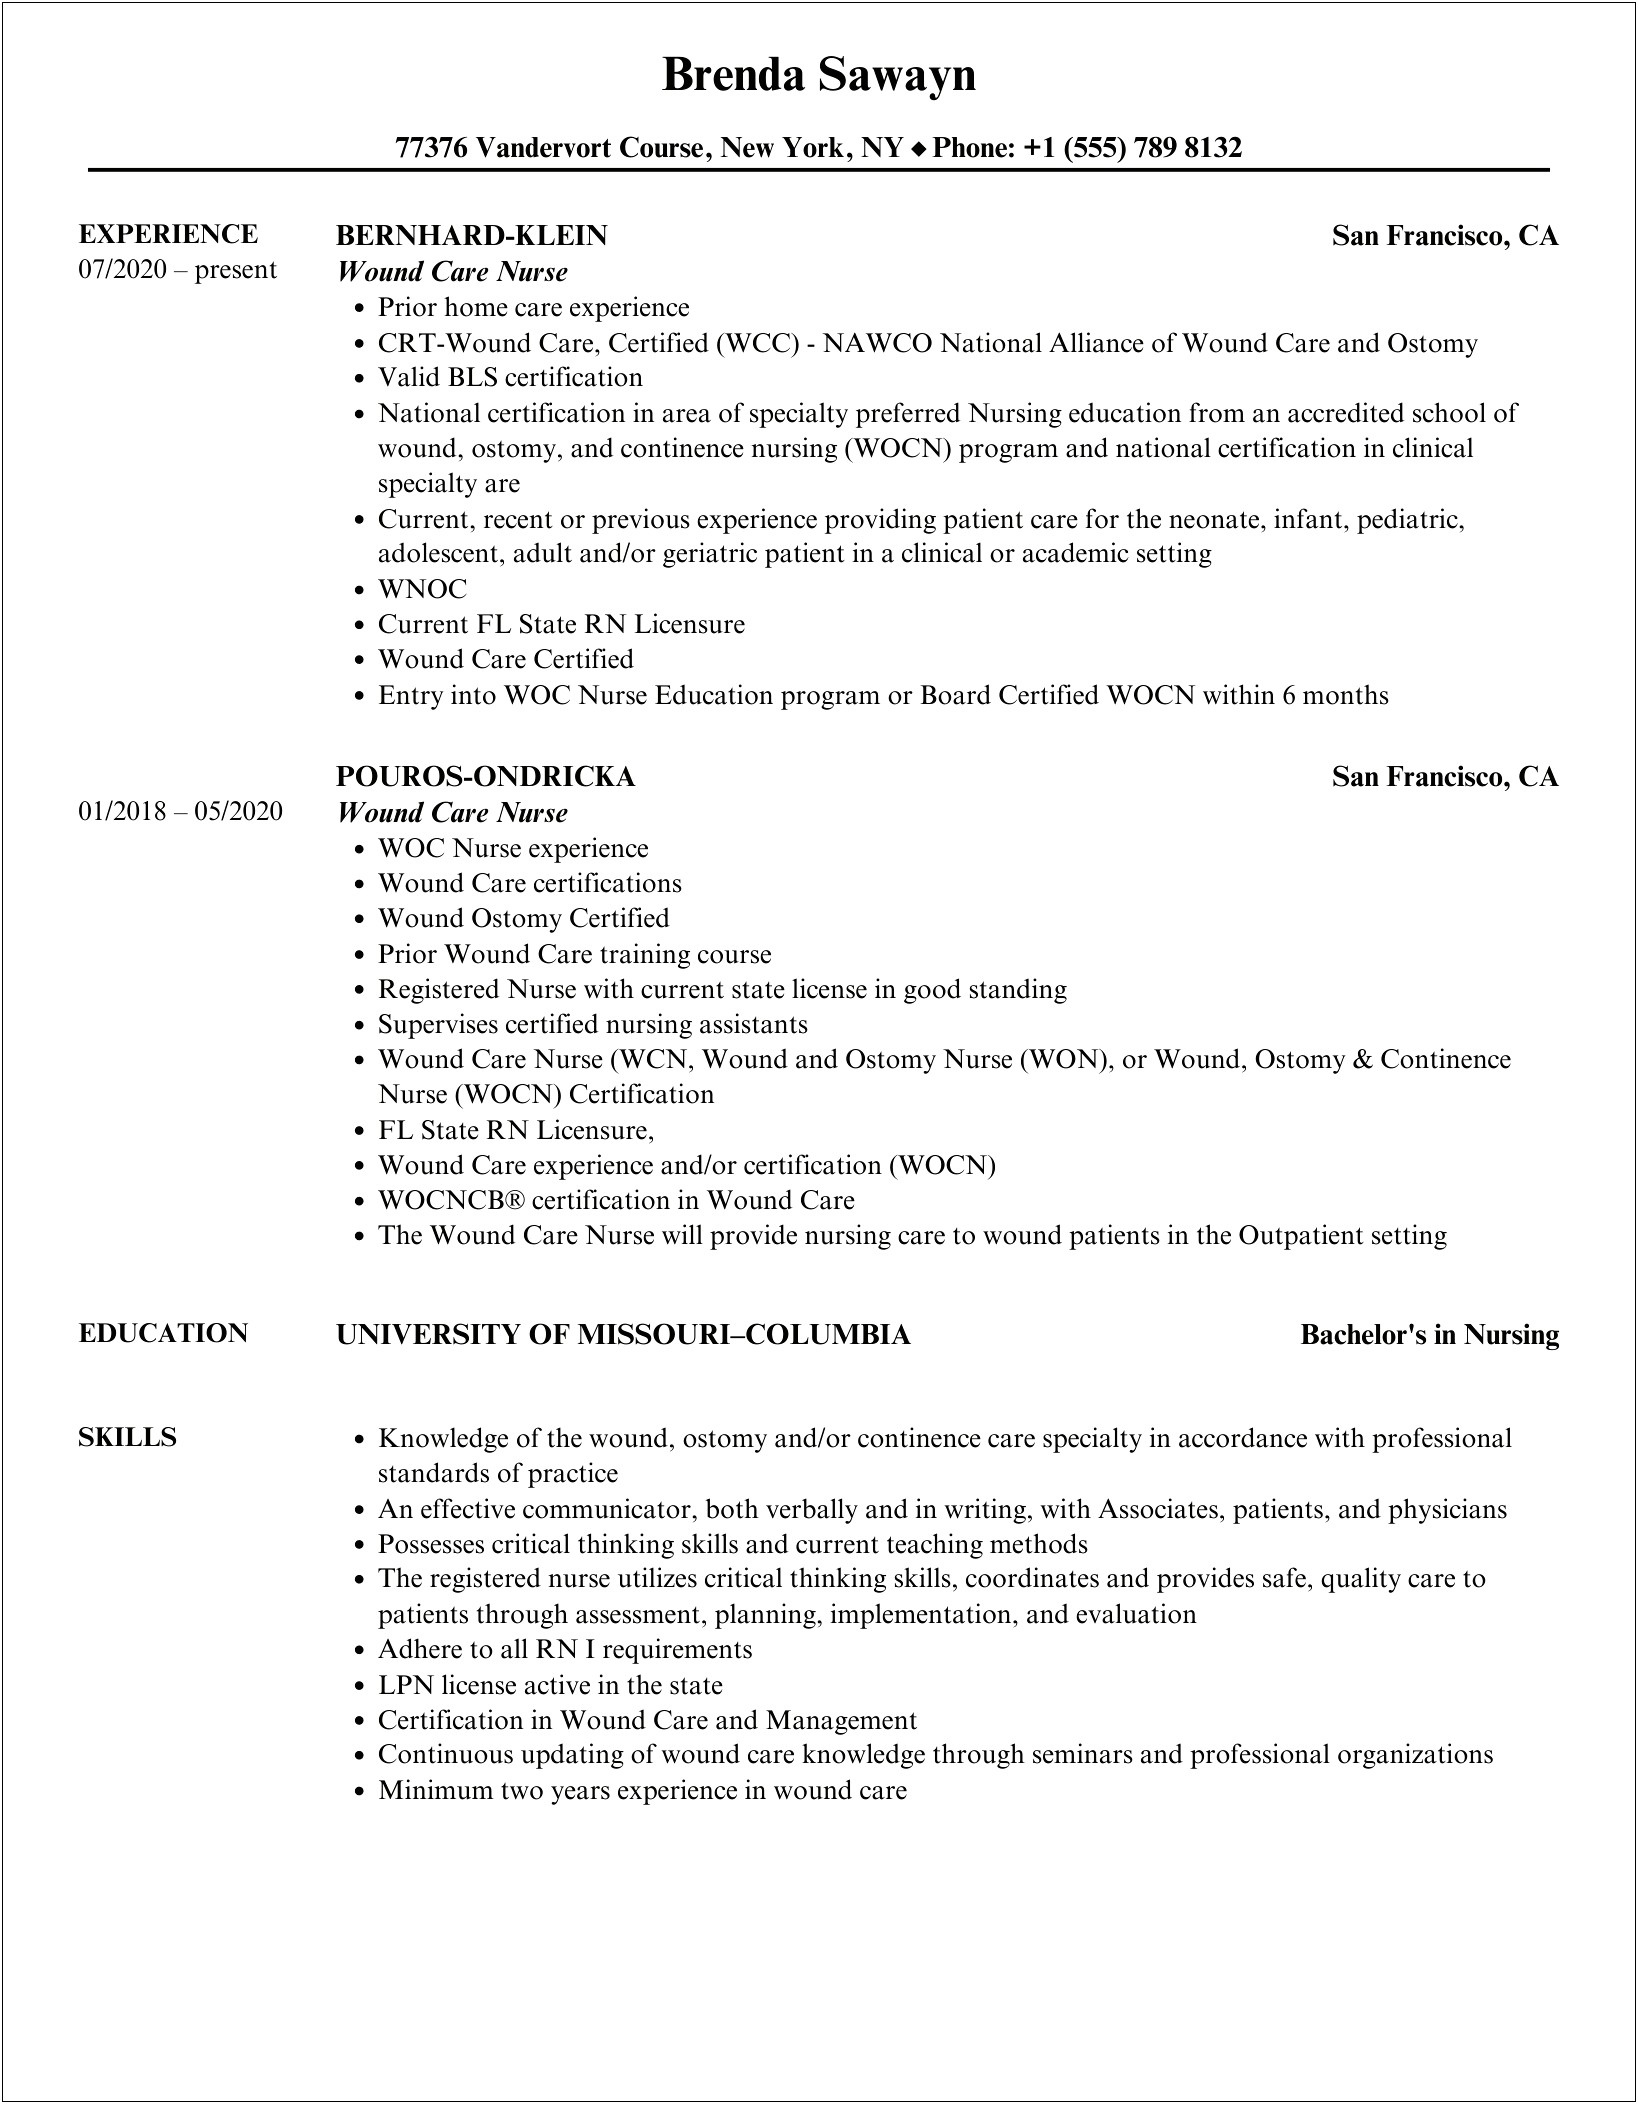 Wound Care Nurse Job Description Resume